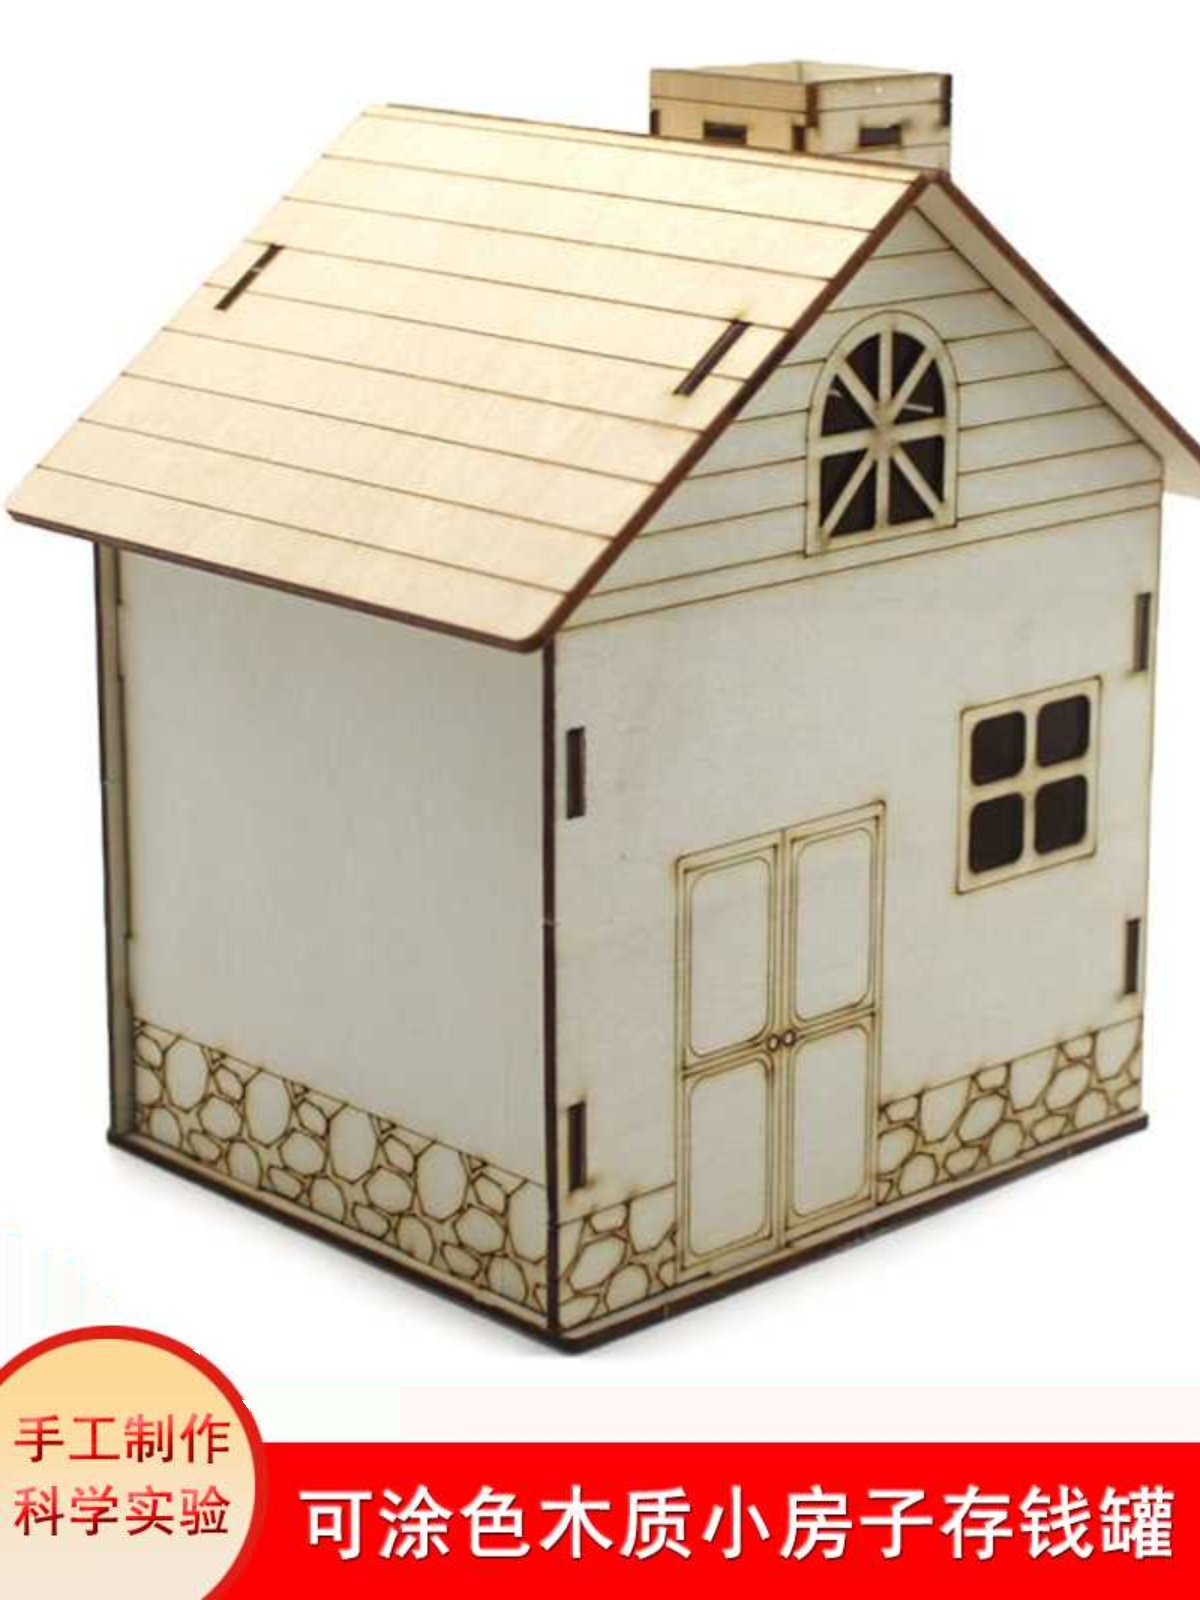 定制可涂色木质小房子存钱罐 拼装创意个性屋小发明女孩手工房模